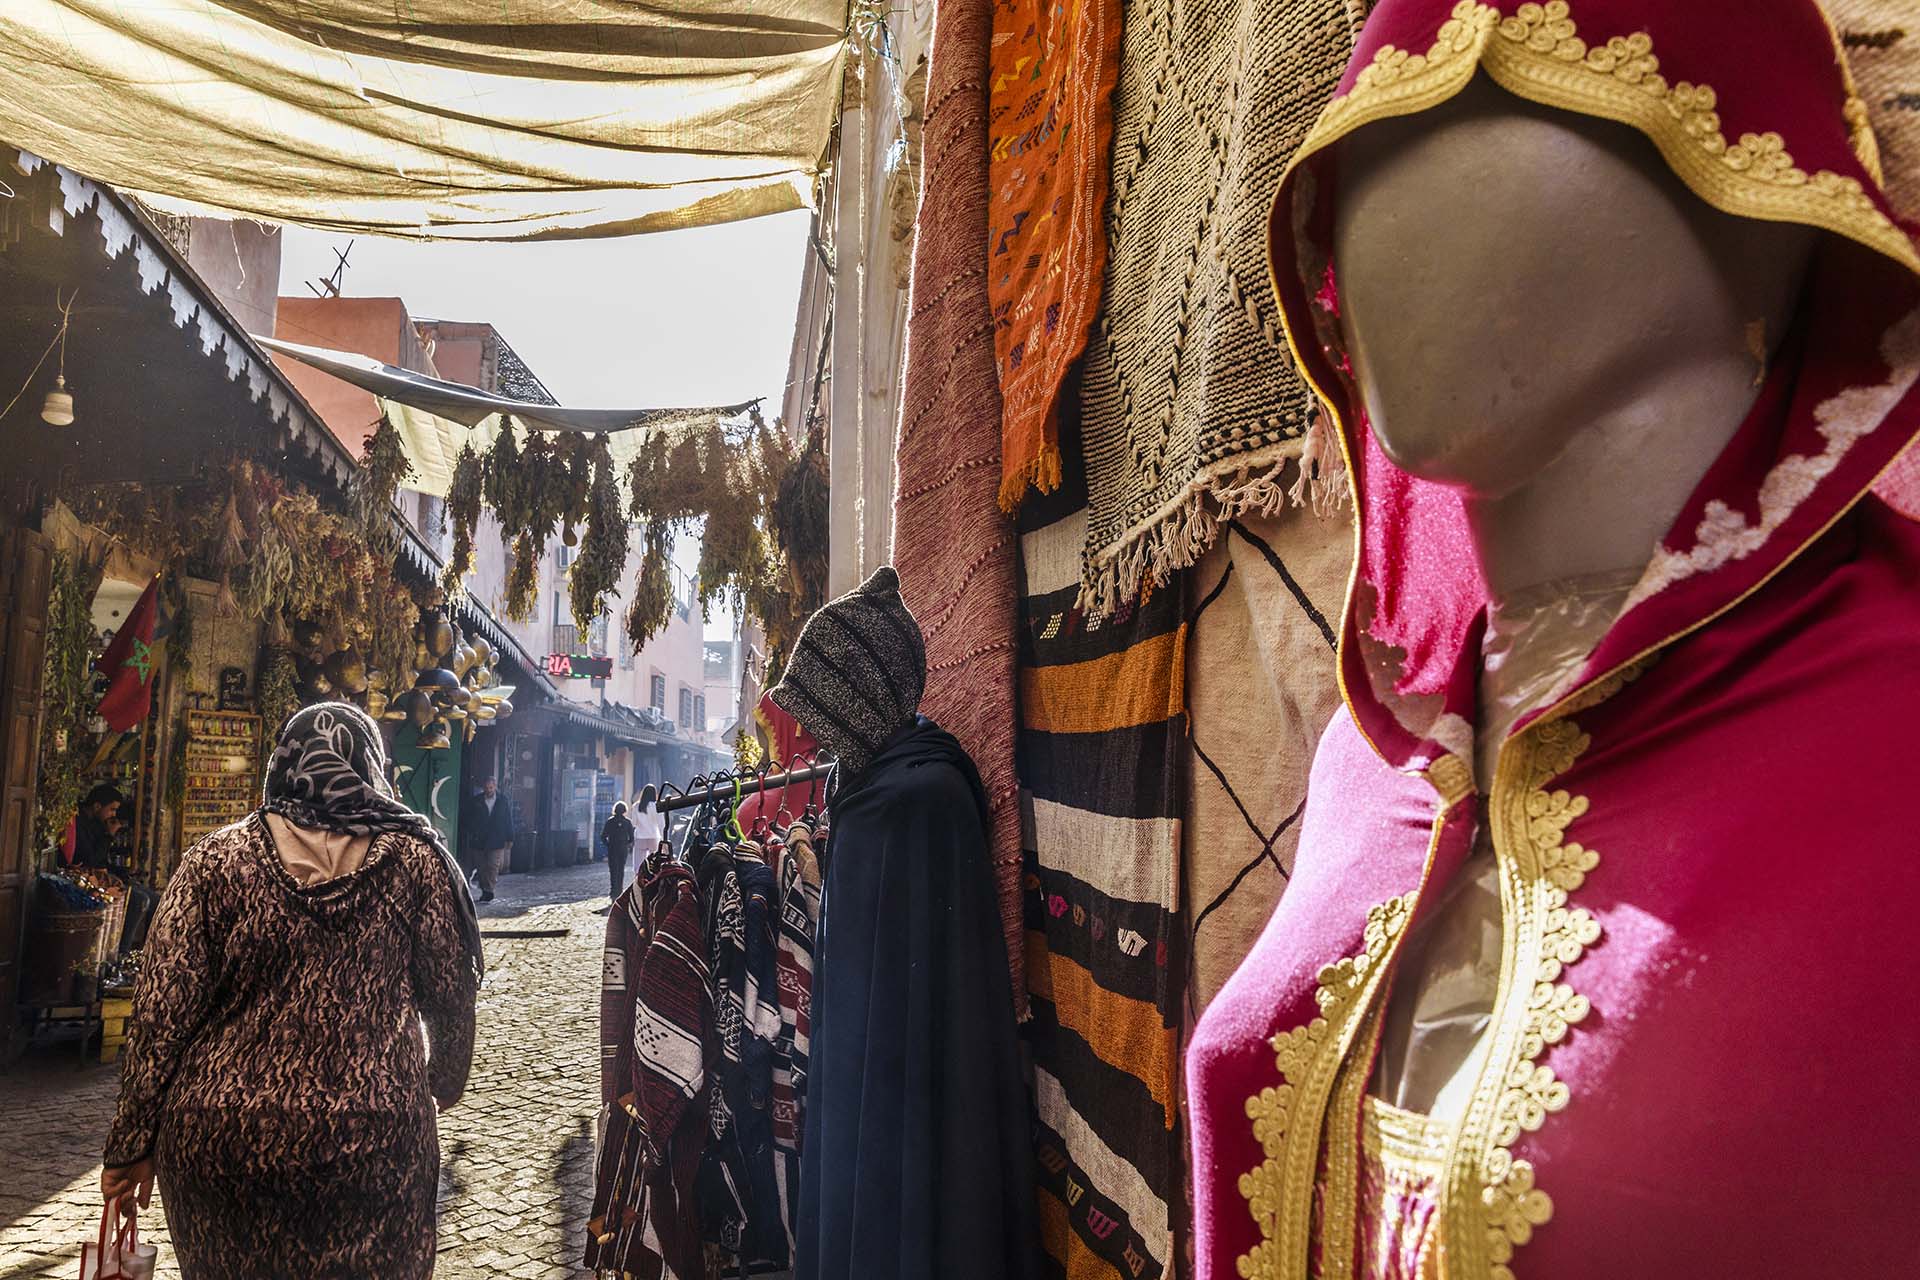 Marocco, negozio di abbigliamento tra i vicoli del souk di Marrakech